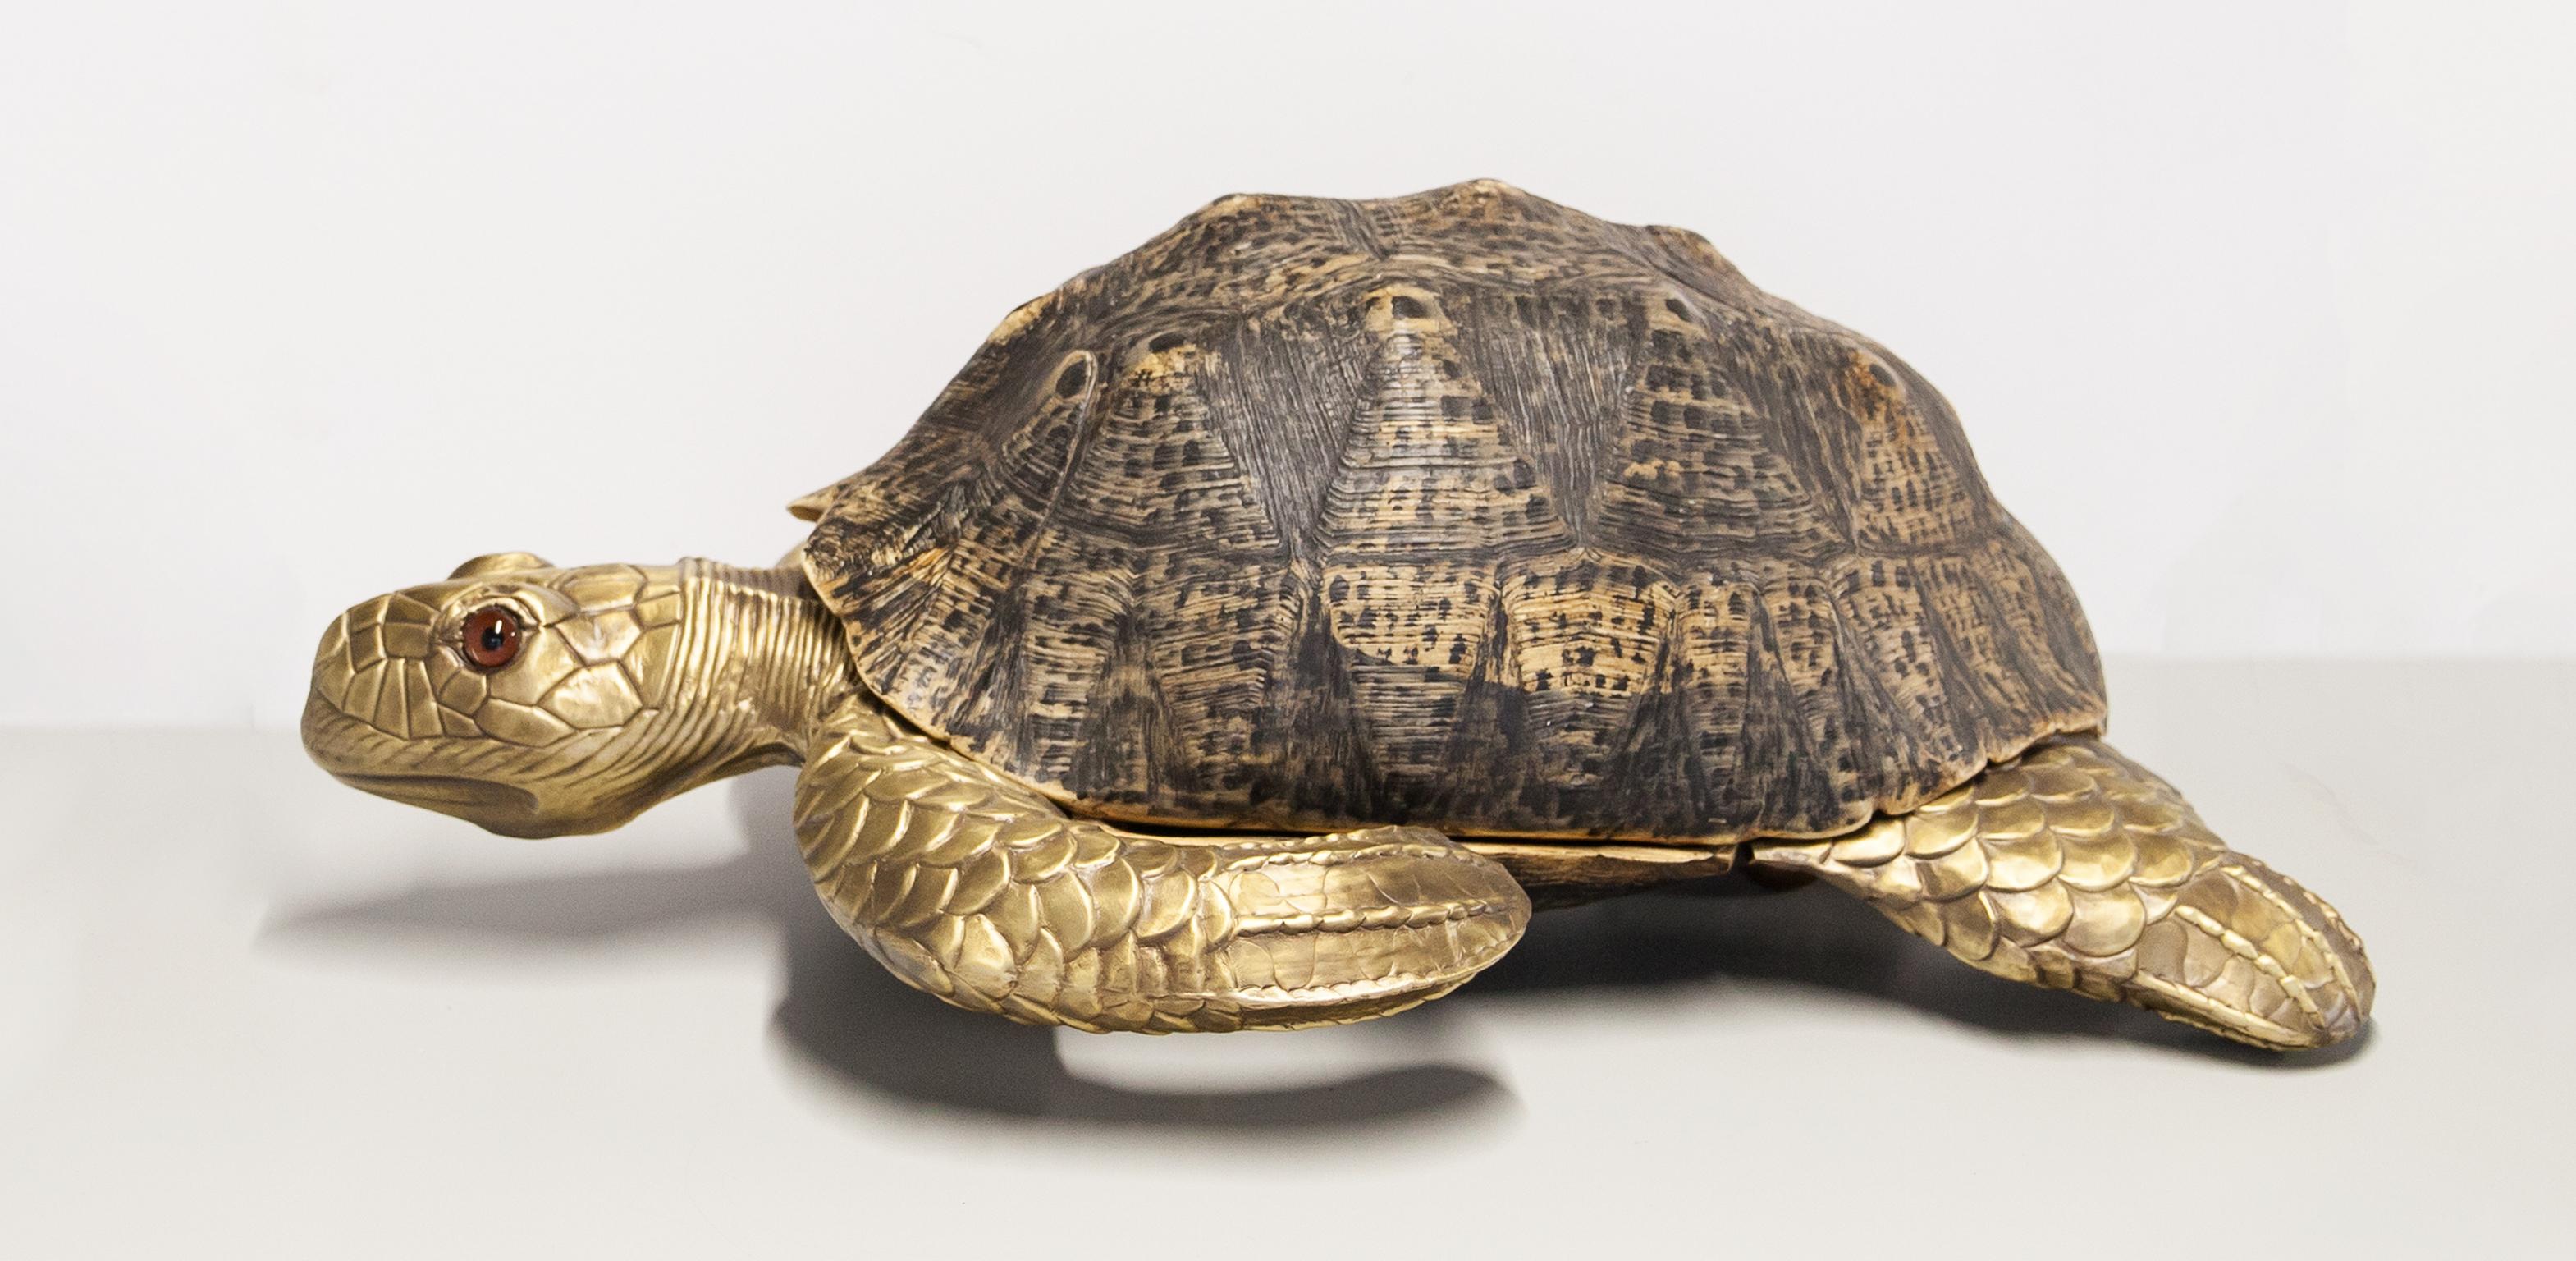 Sgabello tartaruga unico a grandezza naturale con un finto guscio di tartaruga in fibra di vetro montato su una struttura in ottone massiccio e tre sfere in ottone massiccio. Impronta molto autentica di una vera tartaruga e sulla testa ci sono due